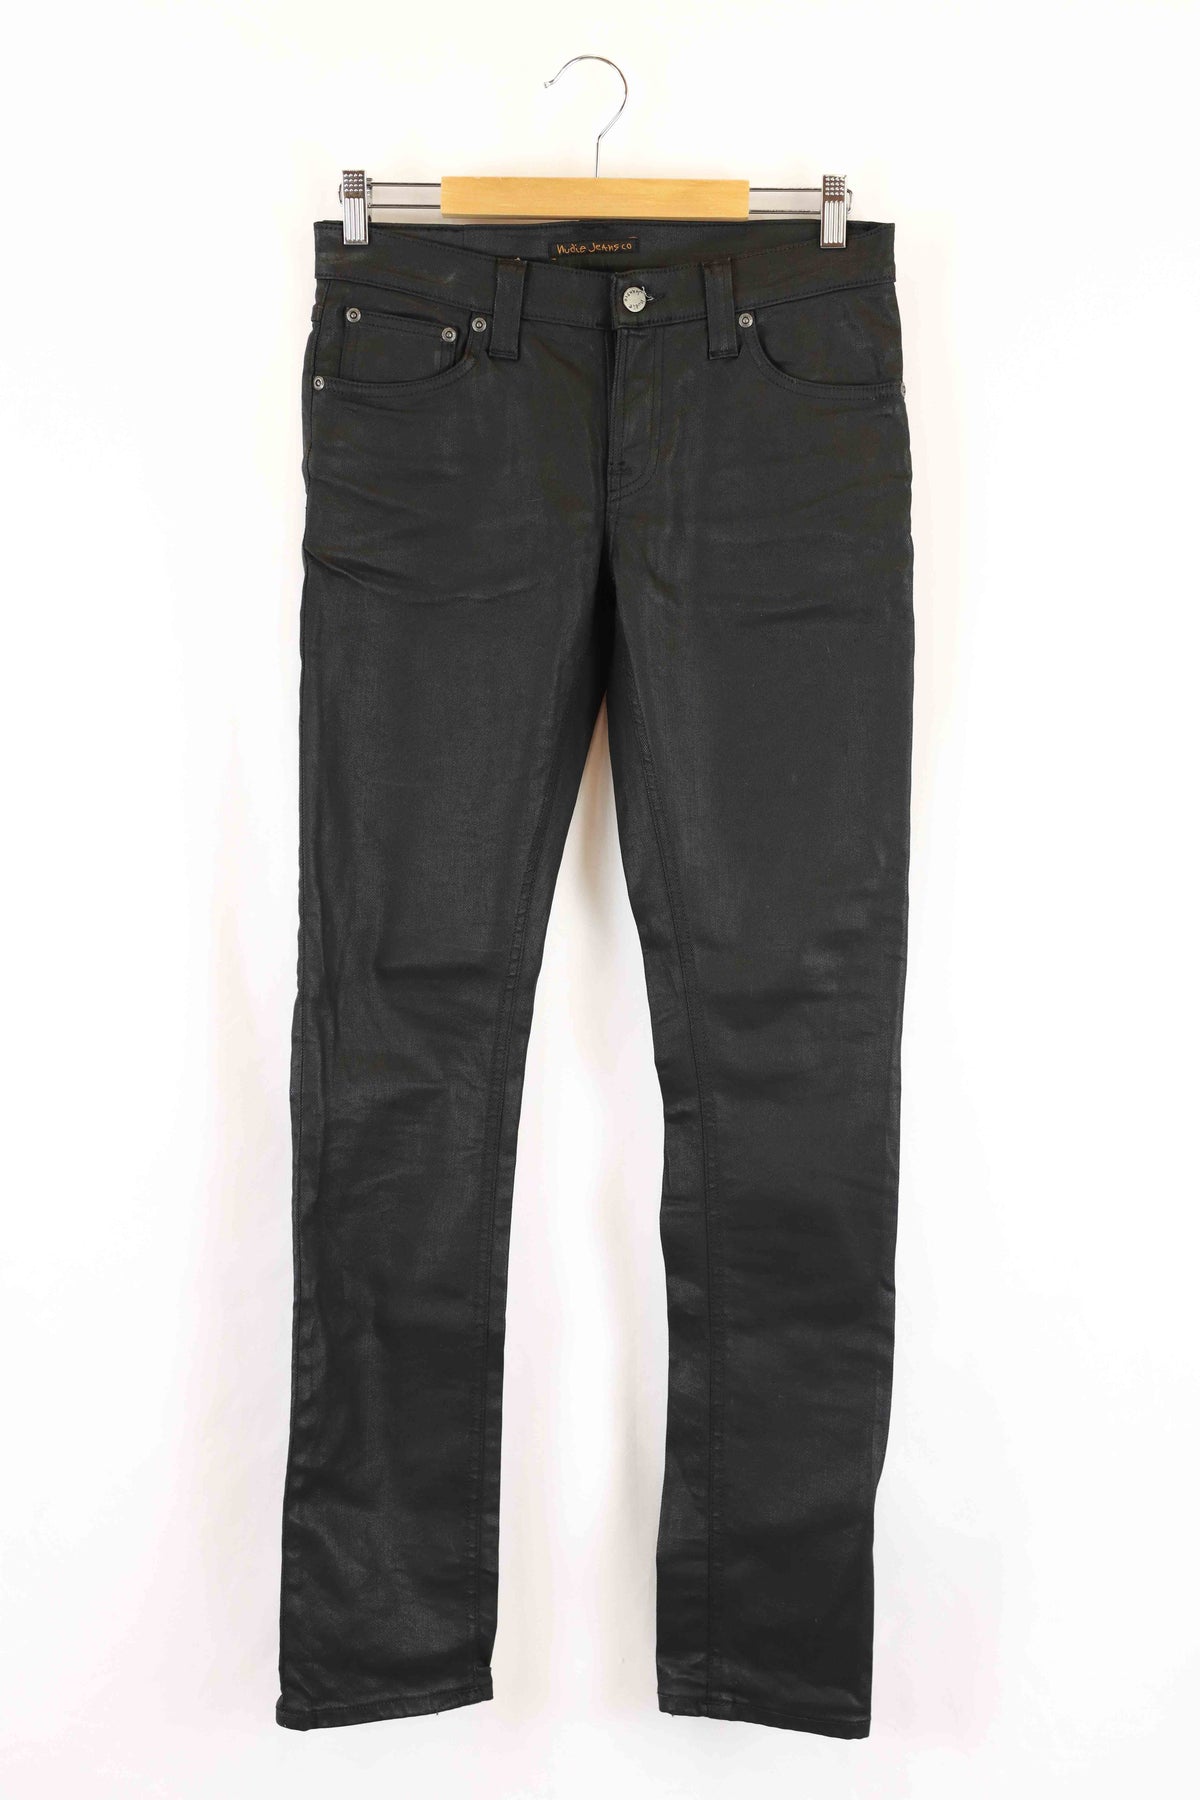 Nudie Jeans Black Leather Denim Skinny Jeans 29